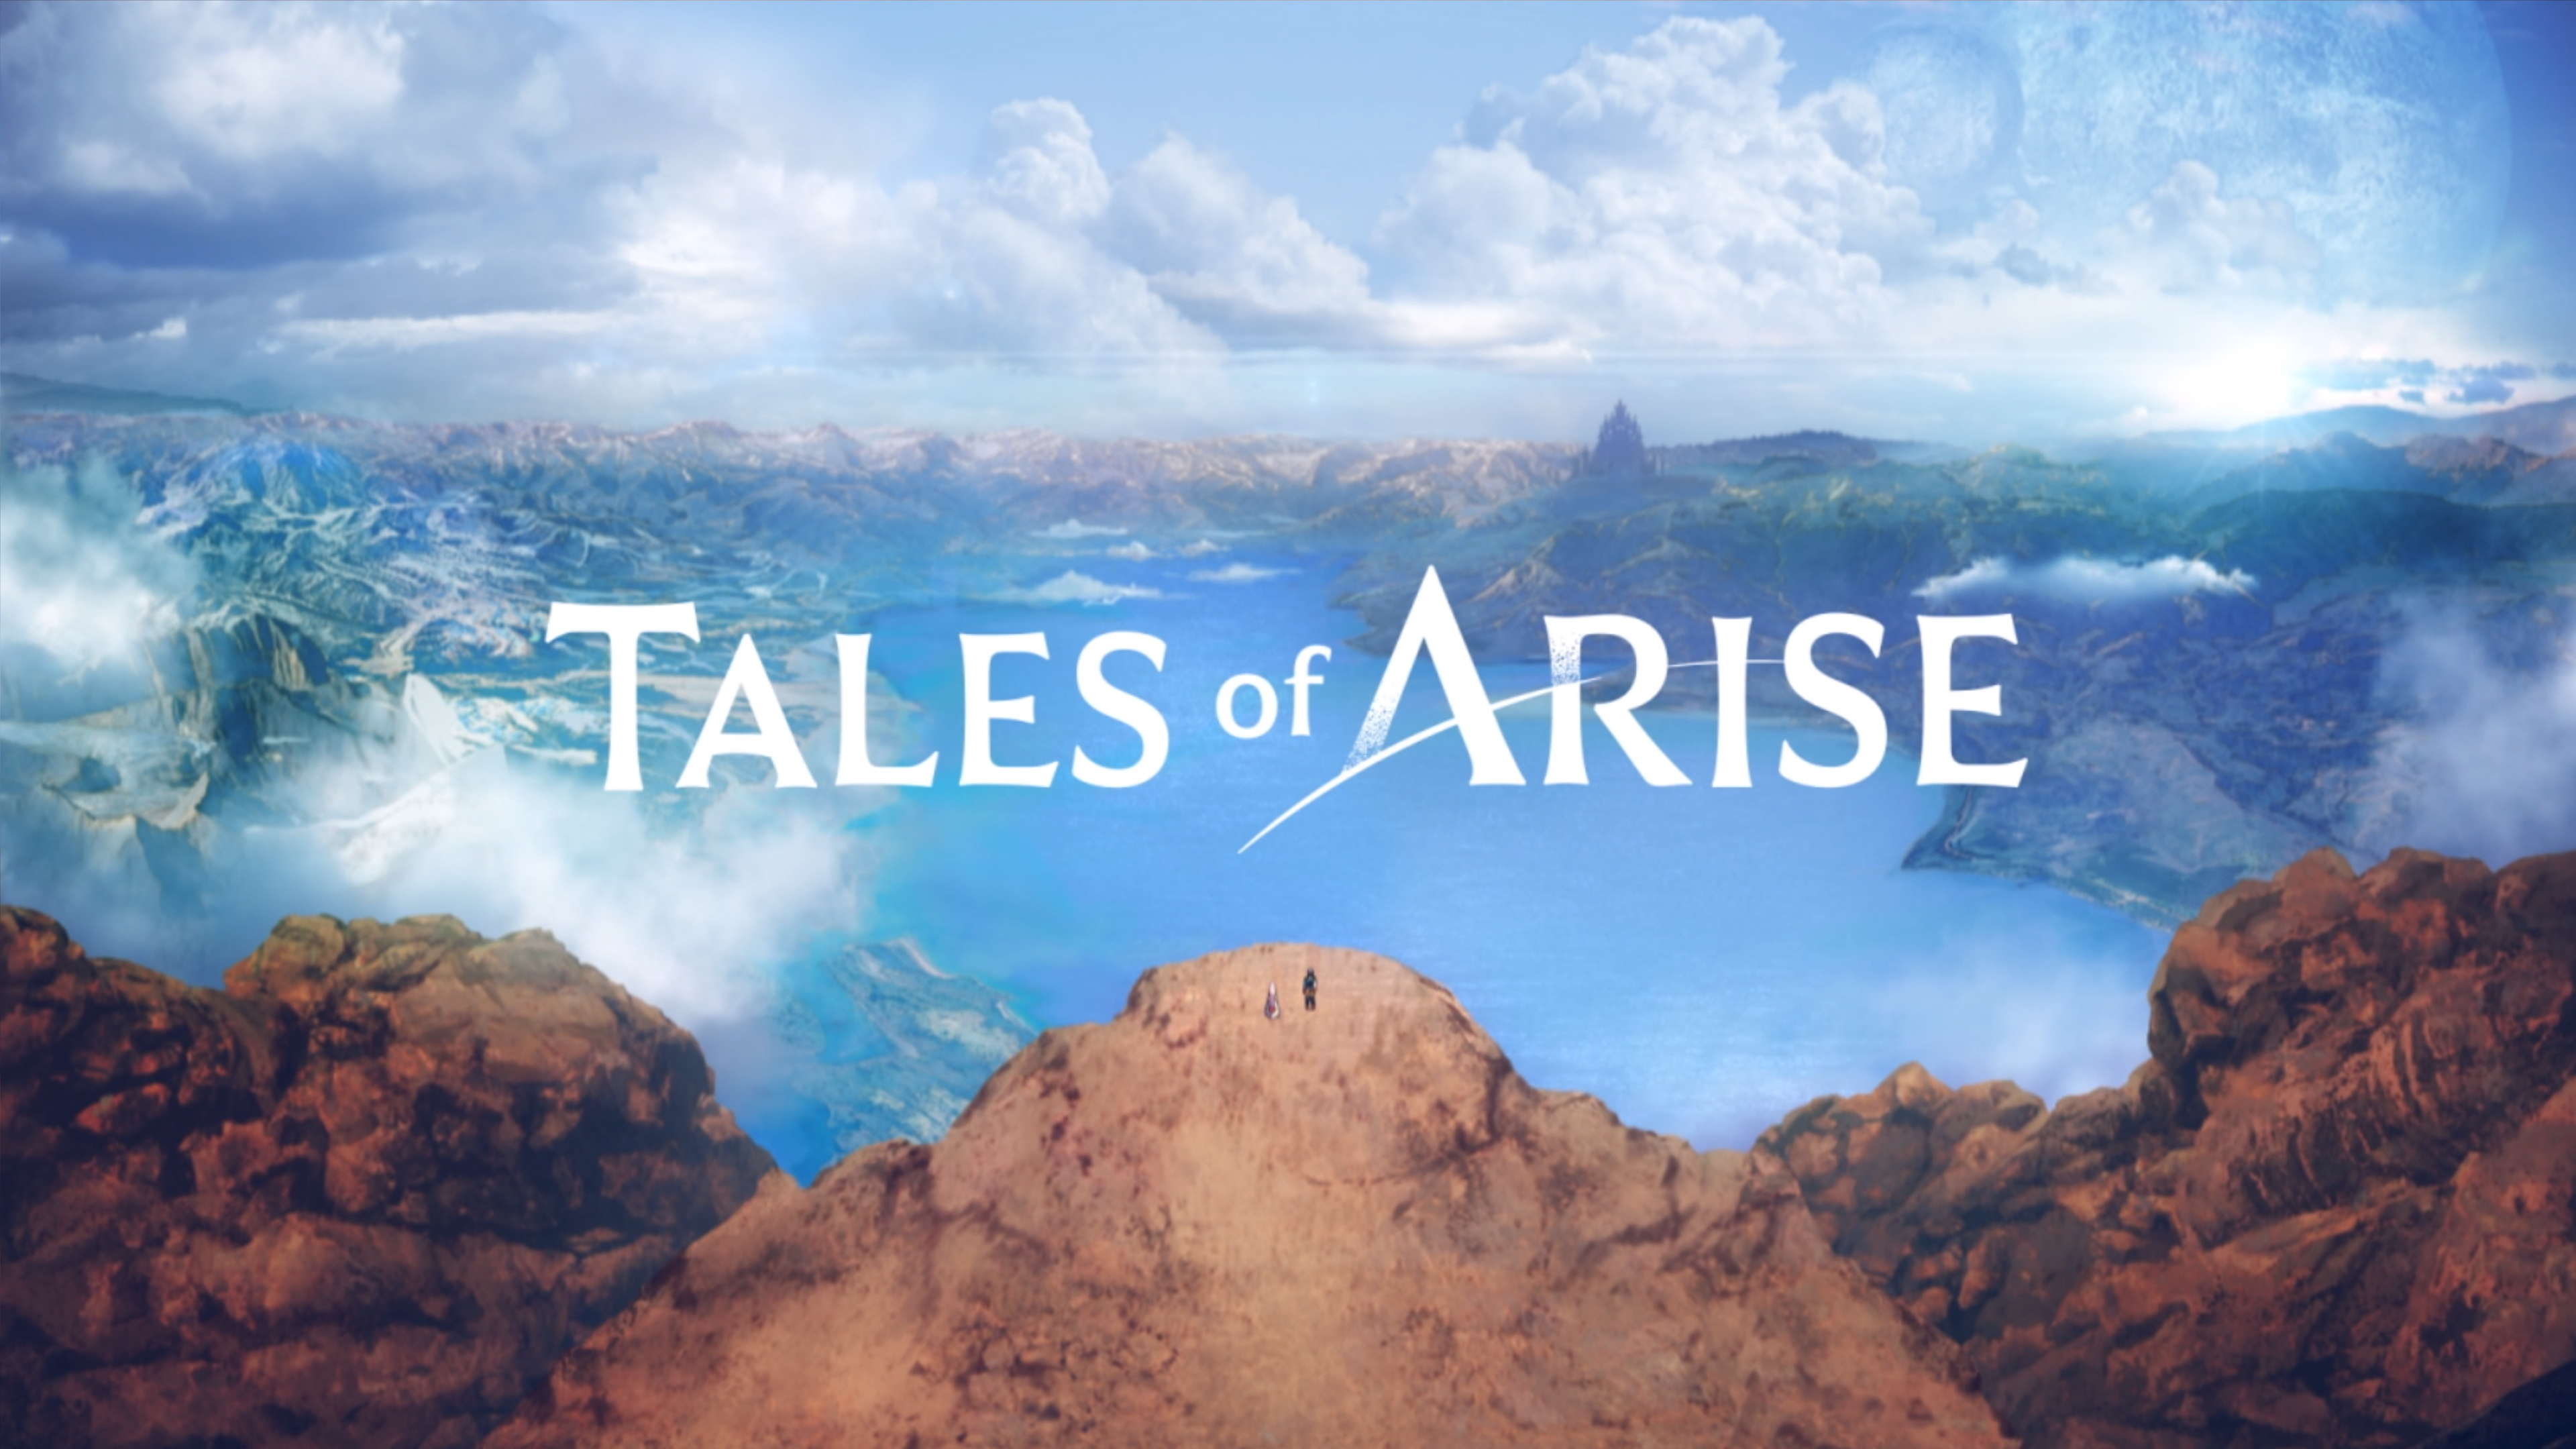 Tales of Arise 2021-09-12 18-35-32-139.jpg